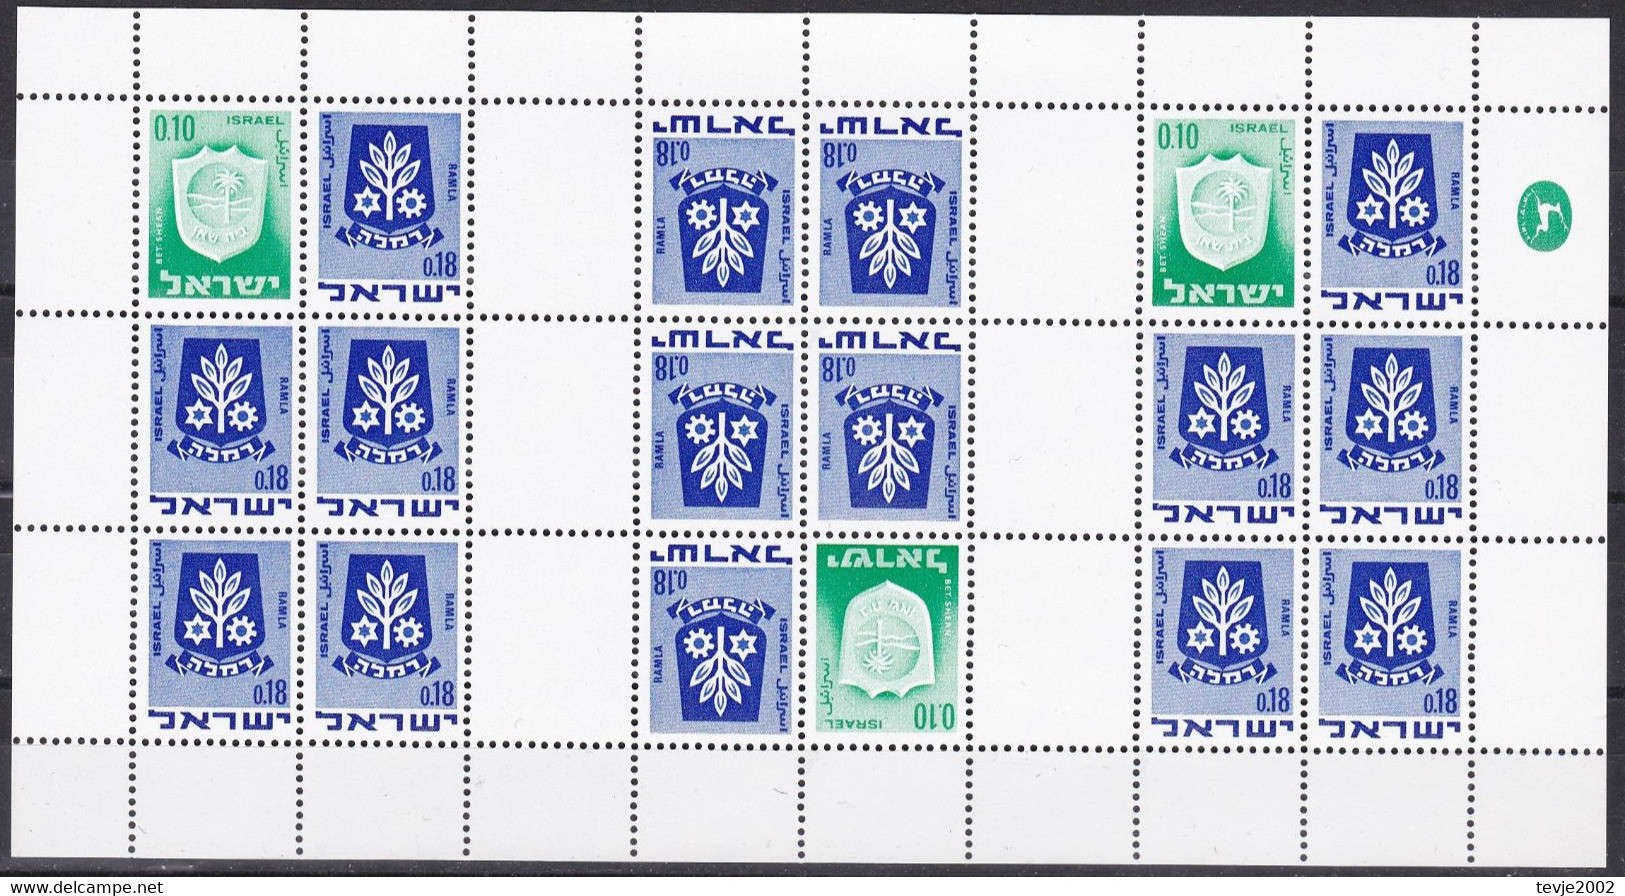 Israel 1973 - Markenheftchenbogen Mi.Nr. 326 + 486 - Postfrisch MNH - Booklets